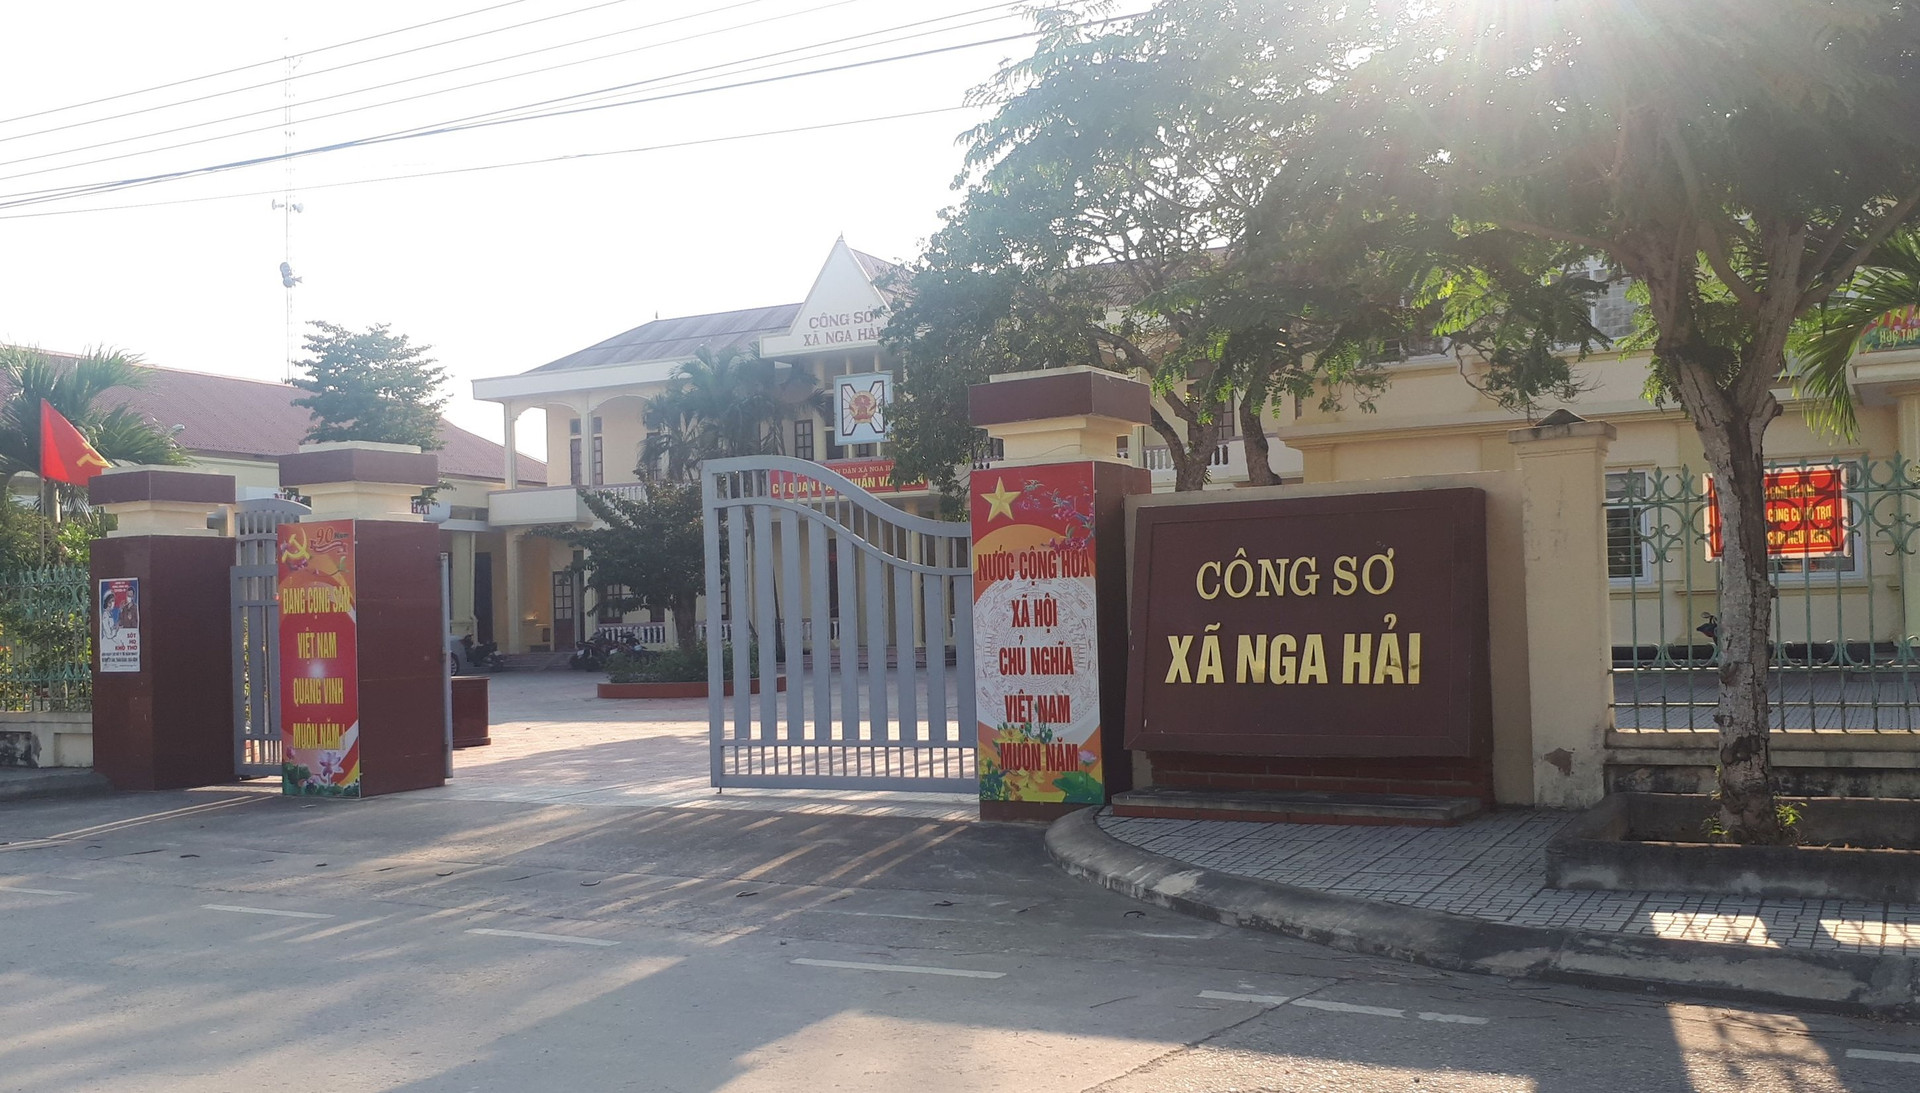 Nga Sơn, Thanh Hóa: Bí thư Đảng ủy xã Nga Hải bị tố dùng bằng cấp 3 giả